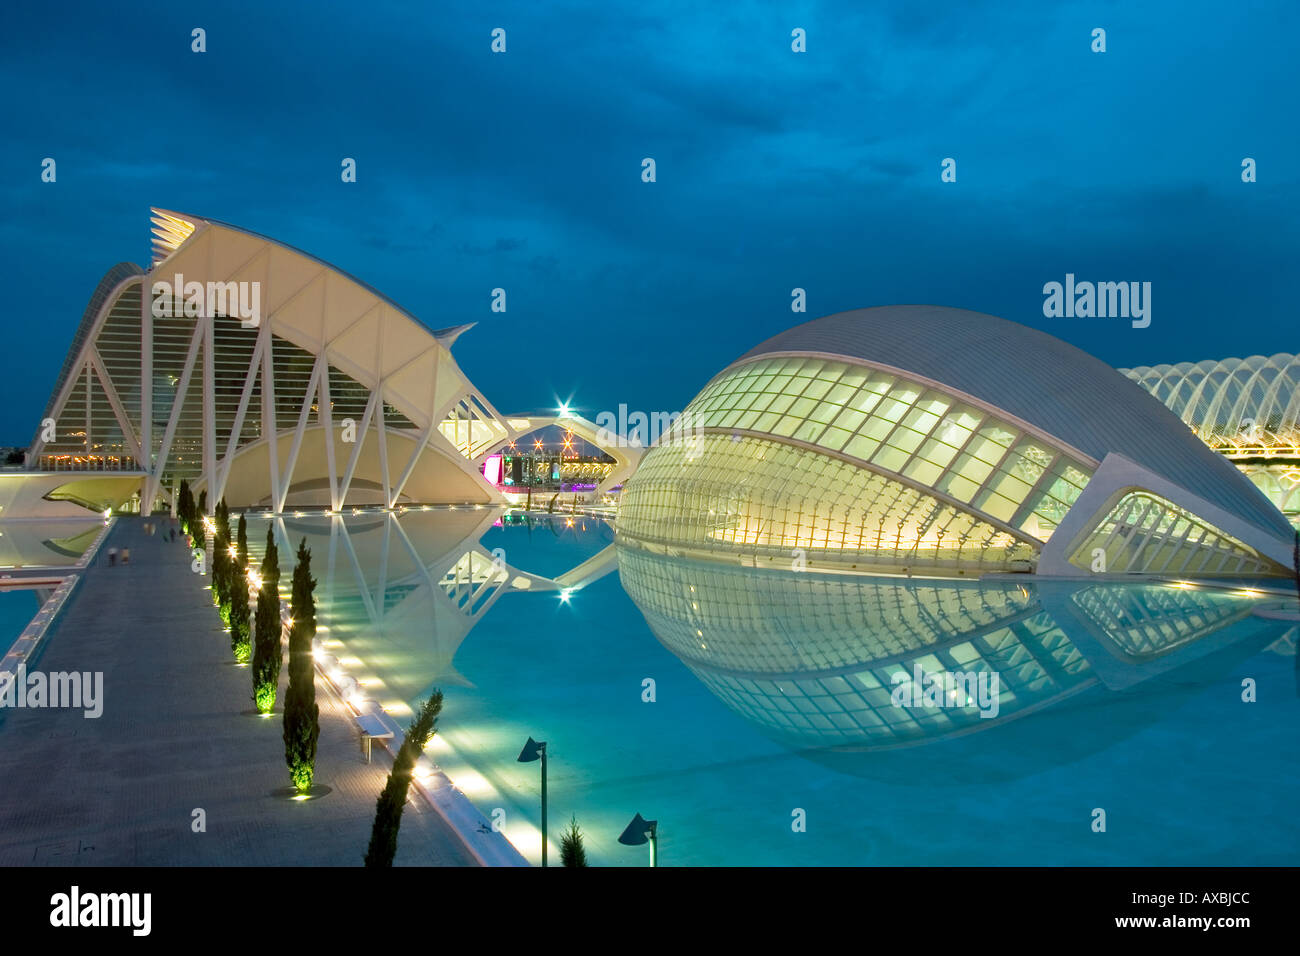 Spain Valencia City of sciences and arts by architect Santiago Calatrava twilight Stock Photo